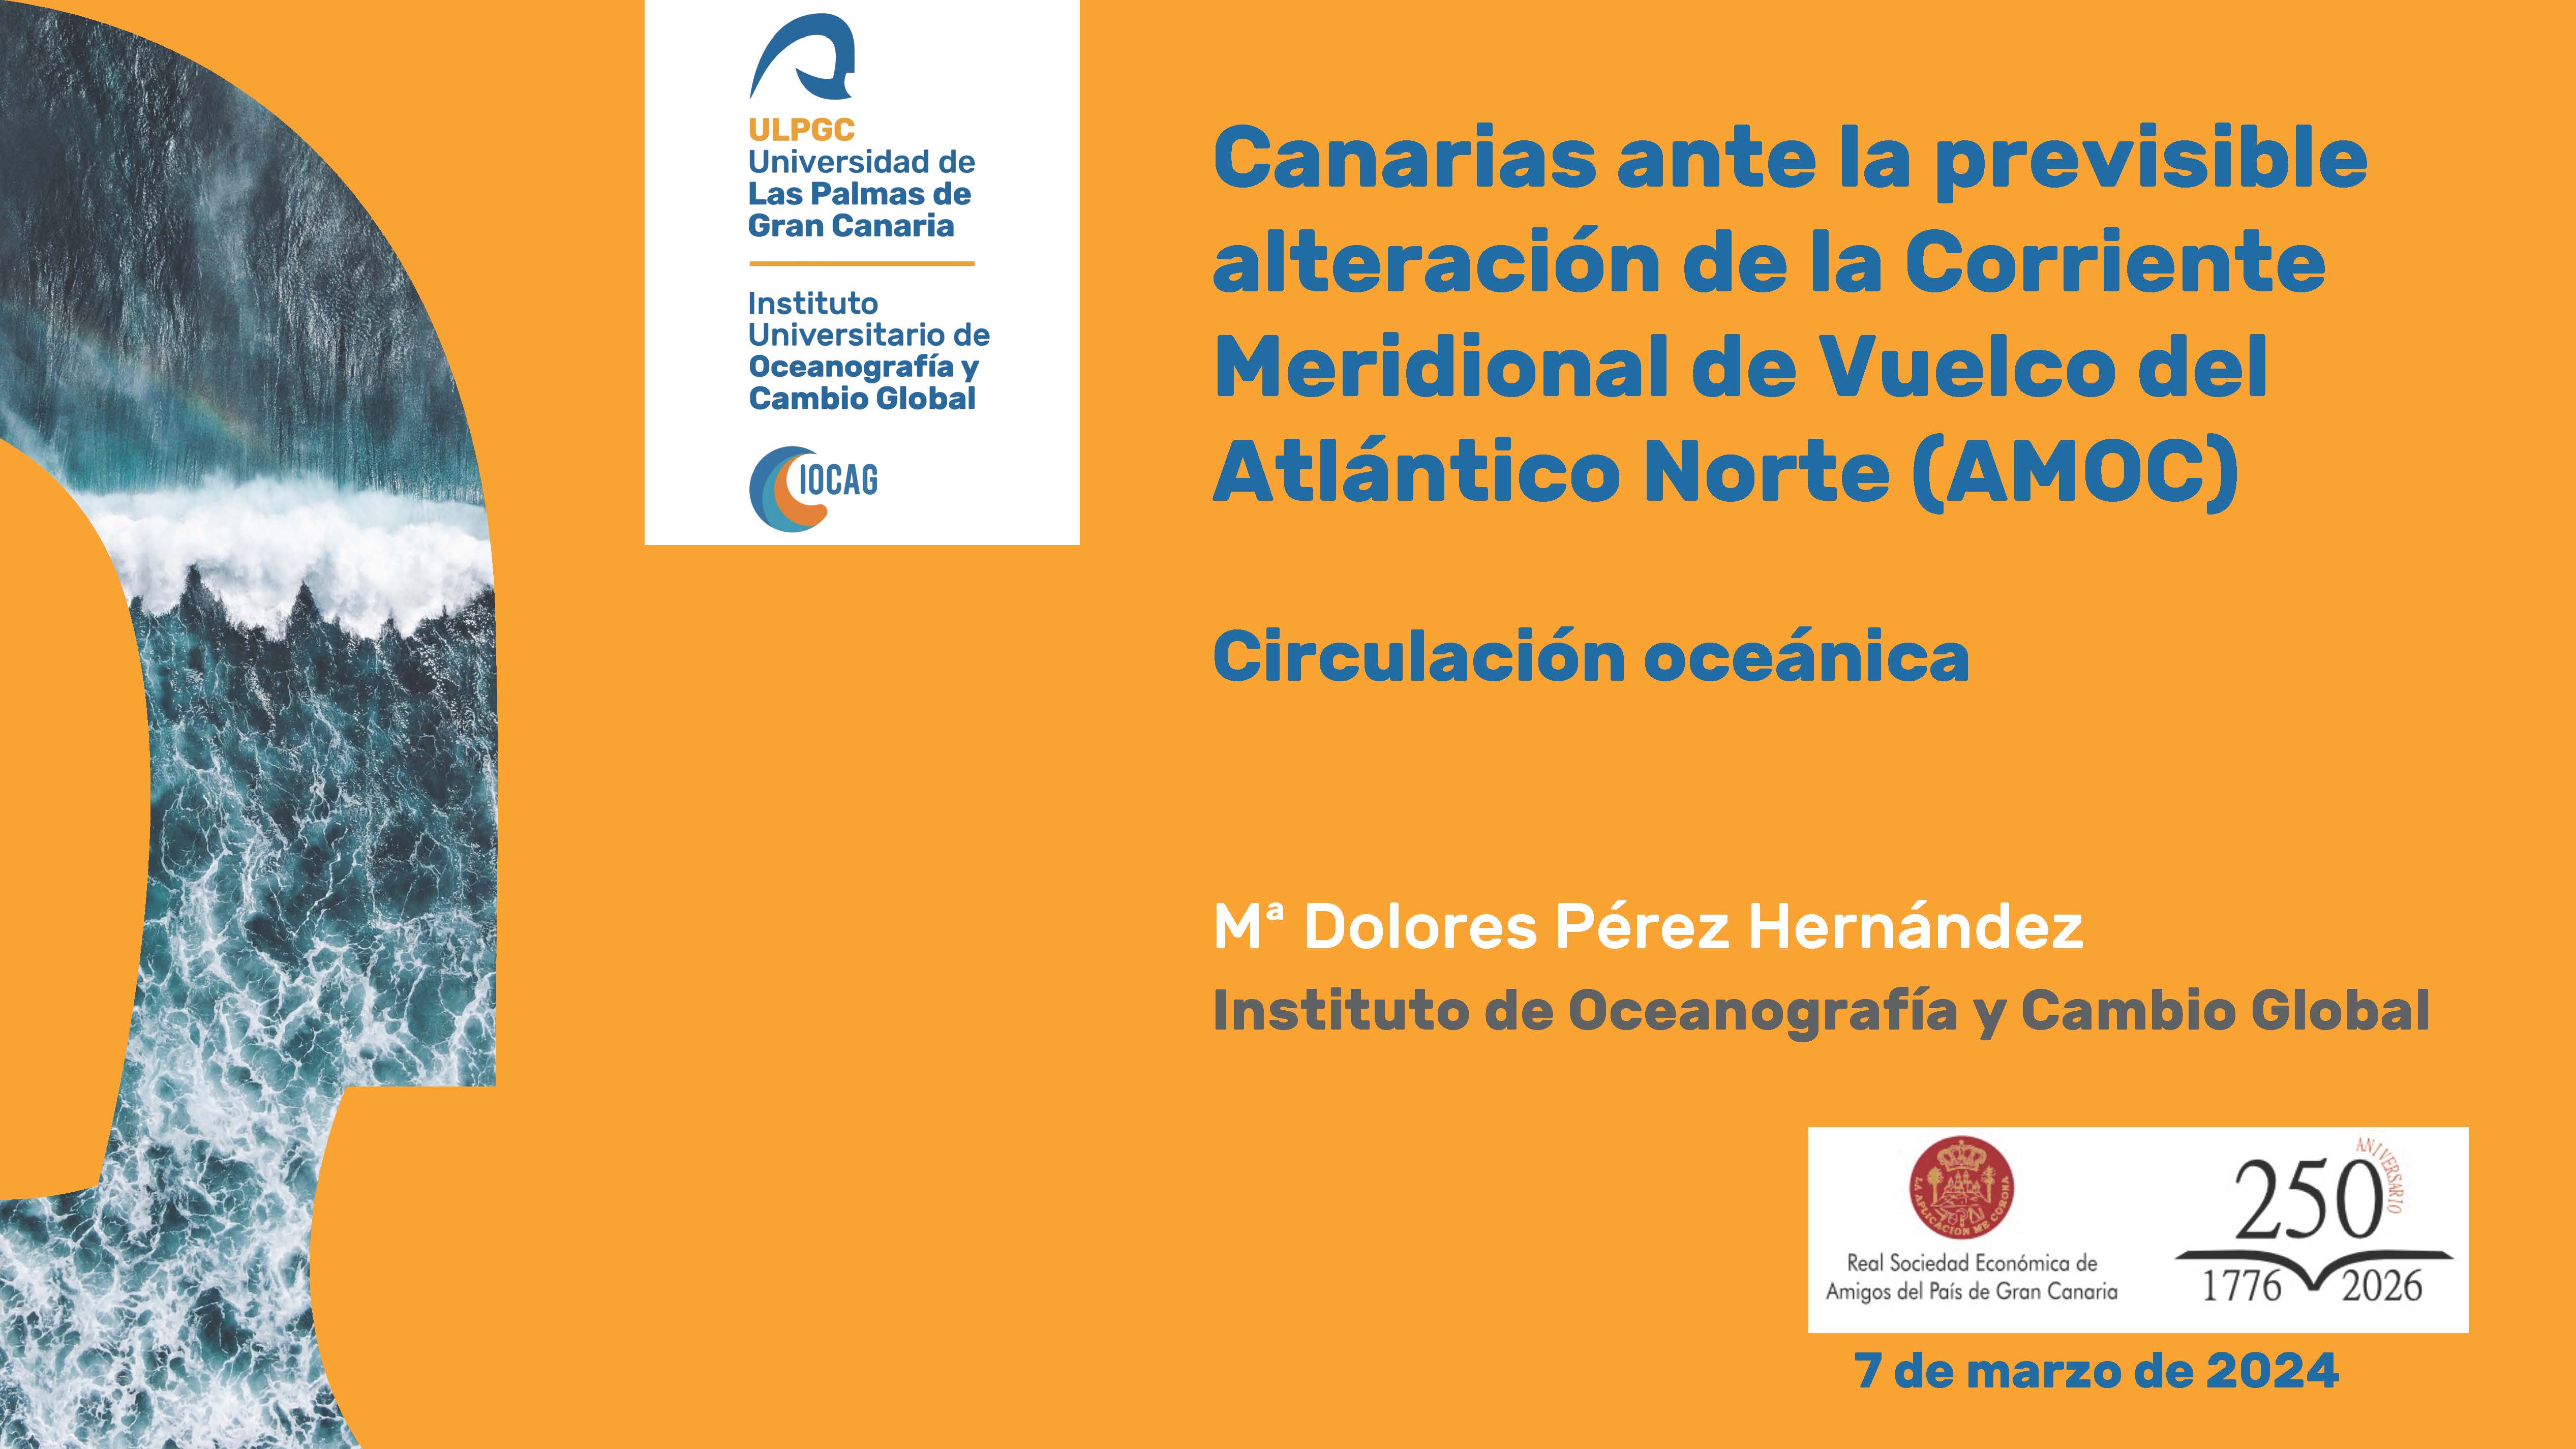 Canarias ante la previsible alteración de la Corriente Meridional de Vuelco del Atlántico Norte (AMOC)